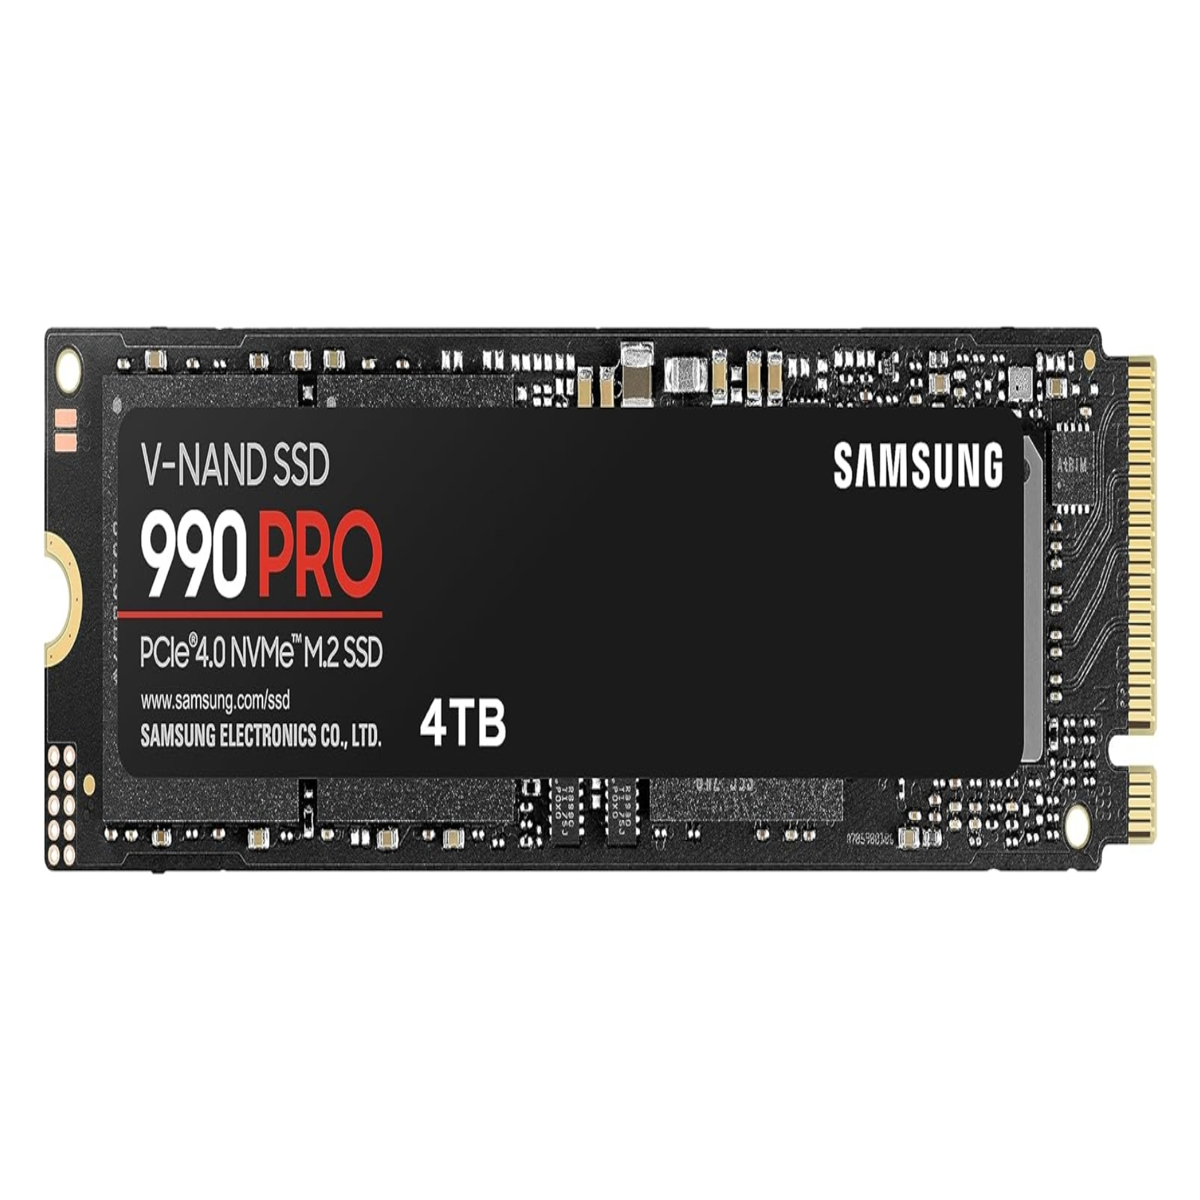 Black Friday Samsung 990 Pro : un des SSD les plus rapides pour PC